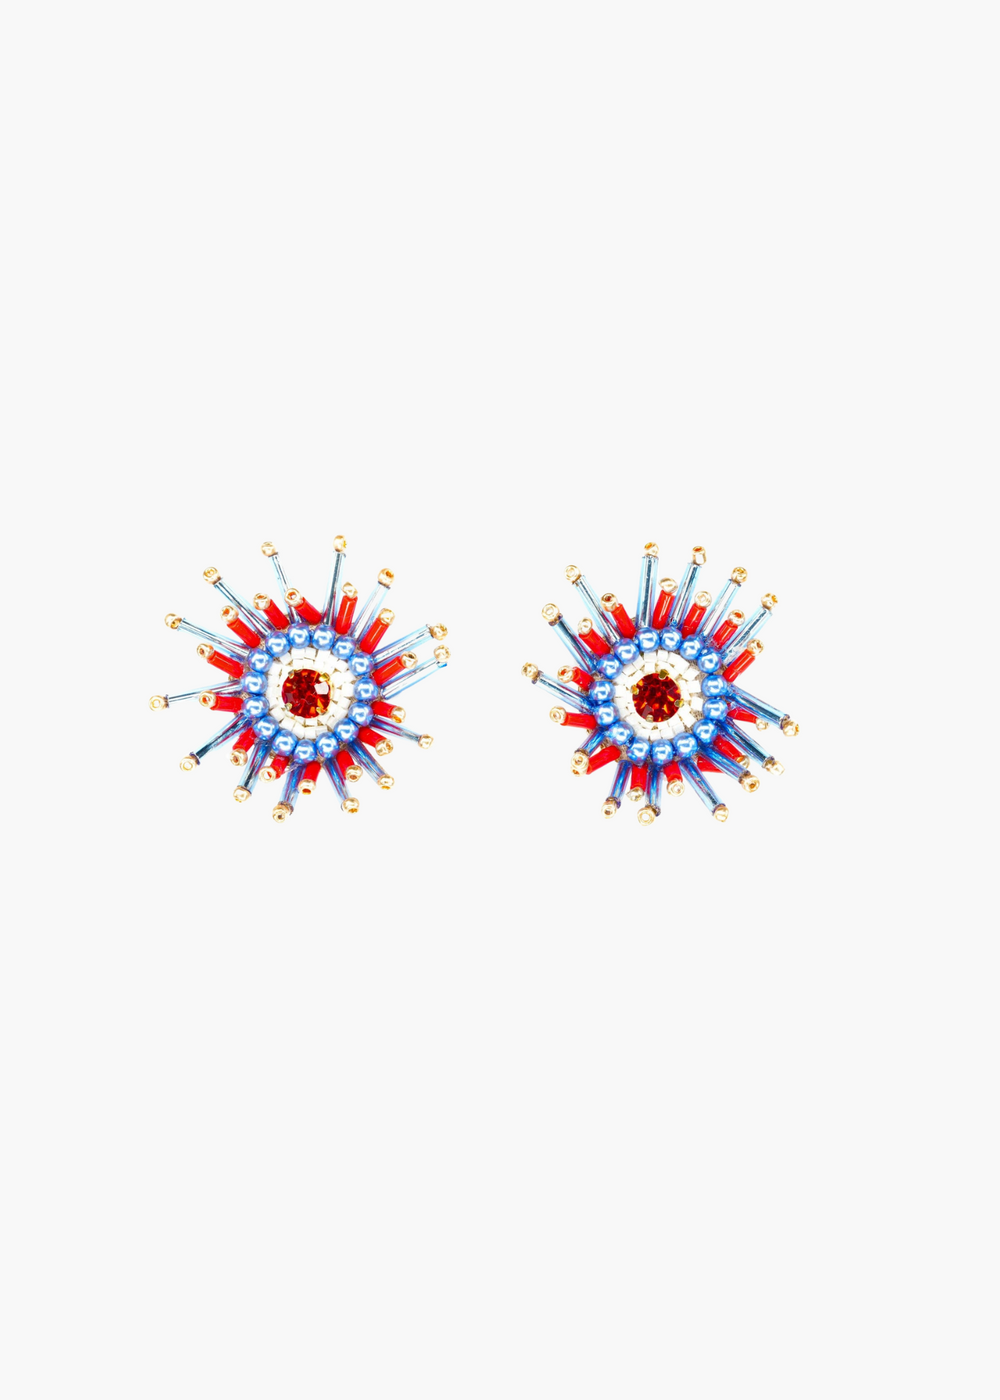 Sunburst Earrings | Red, White and Blue